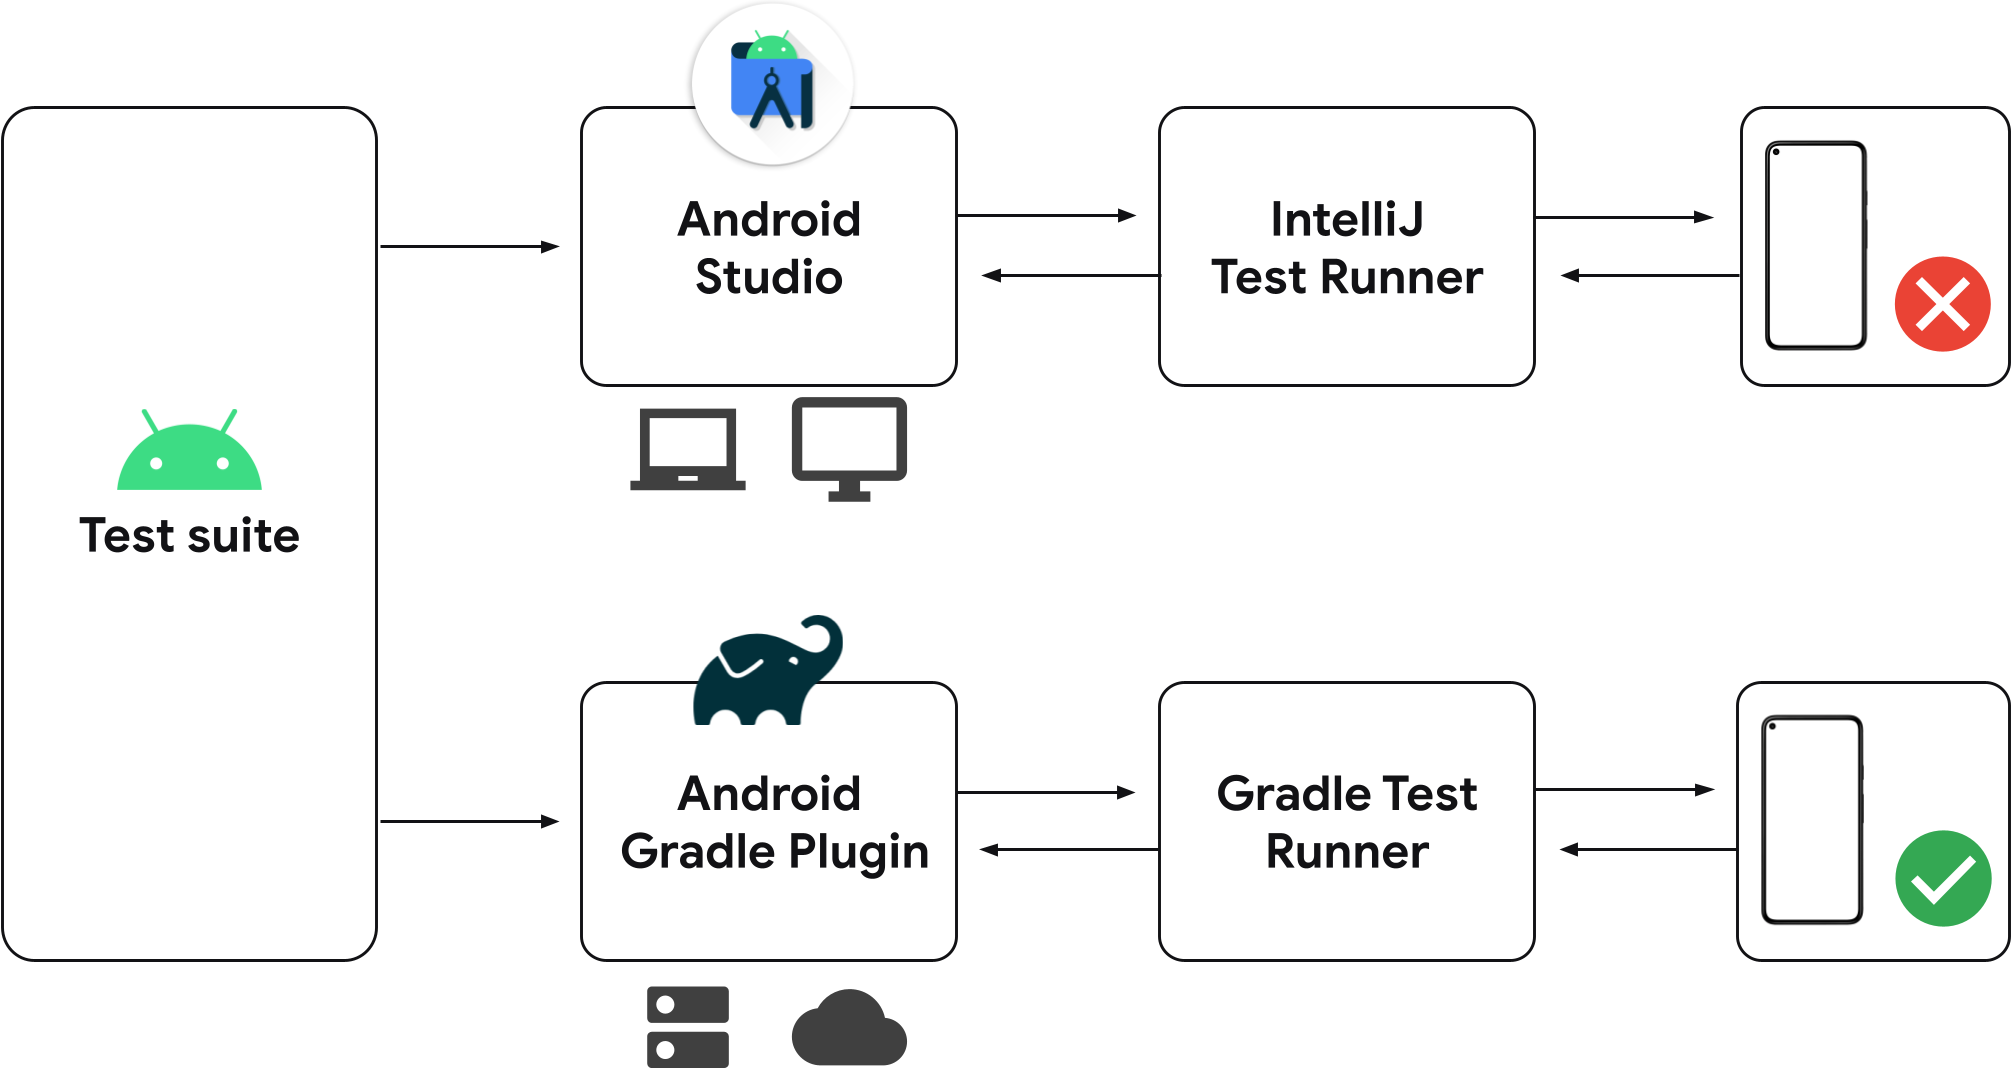 以前版本的 Android Studio 中的独立测试运行程序